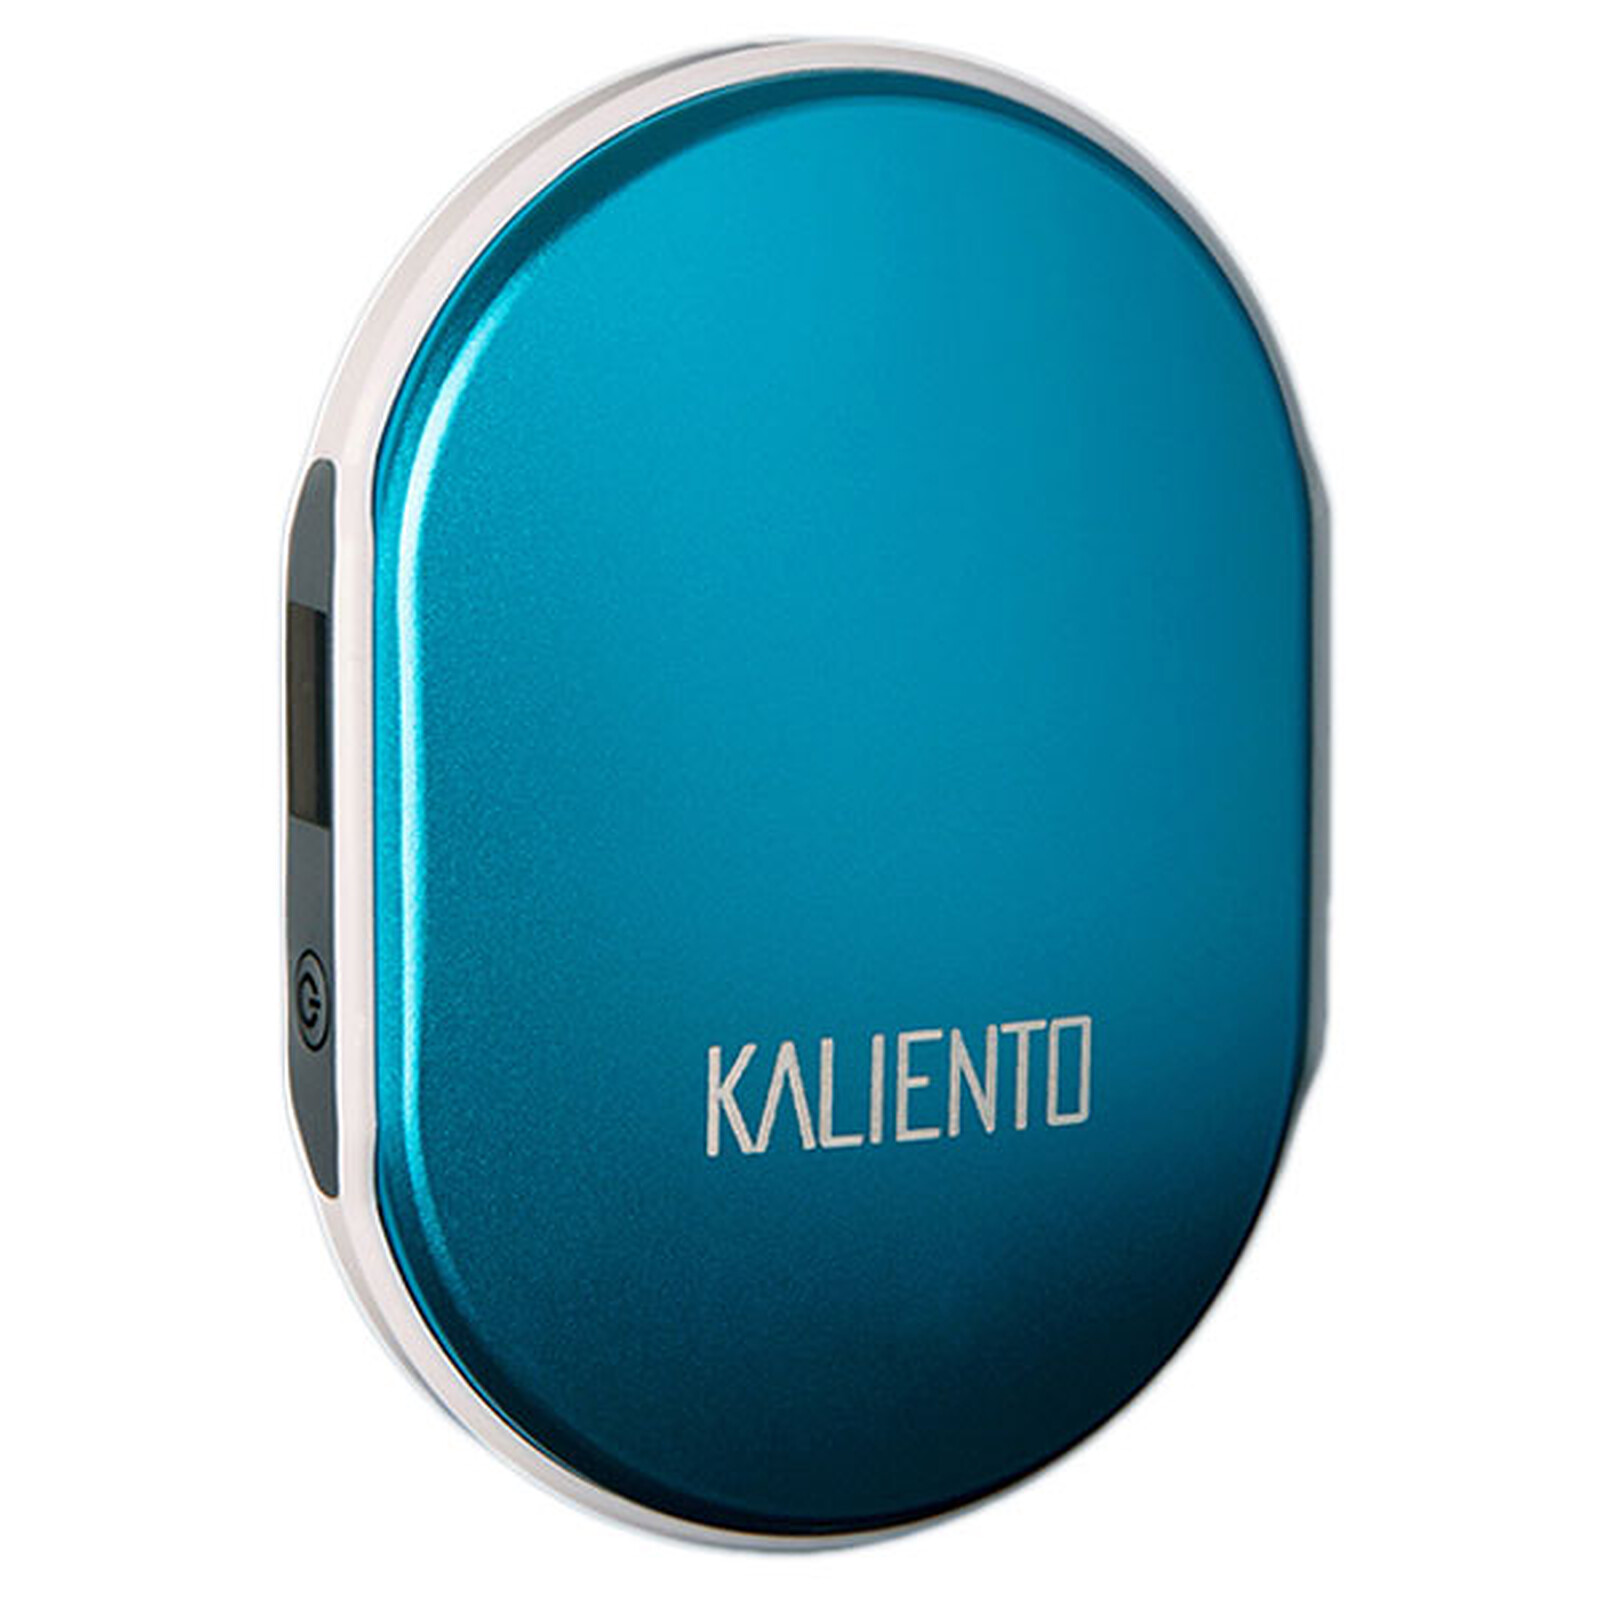 Bequipe Kaliento (Bleu) - Autres accessoires jeu - Garantie 3 ans